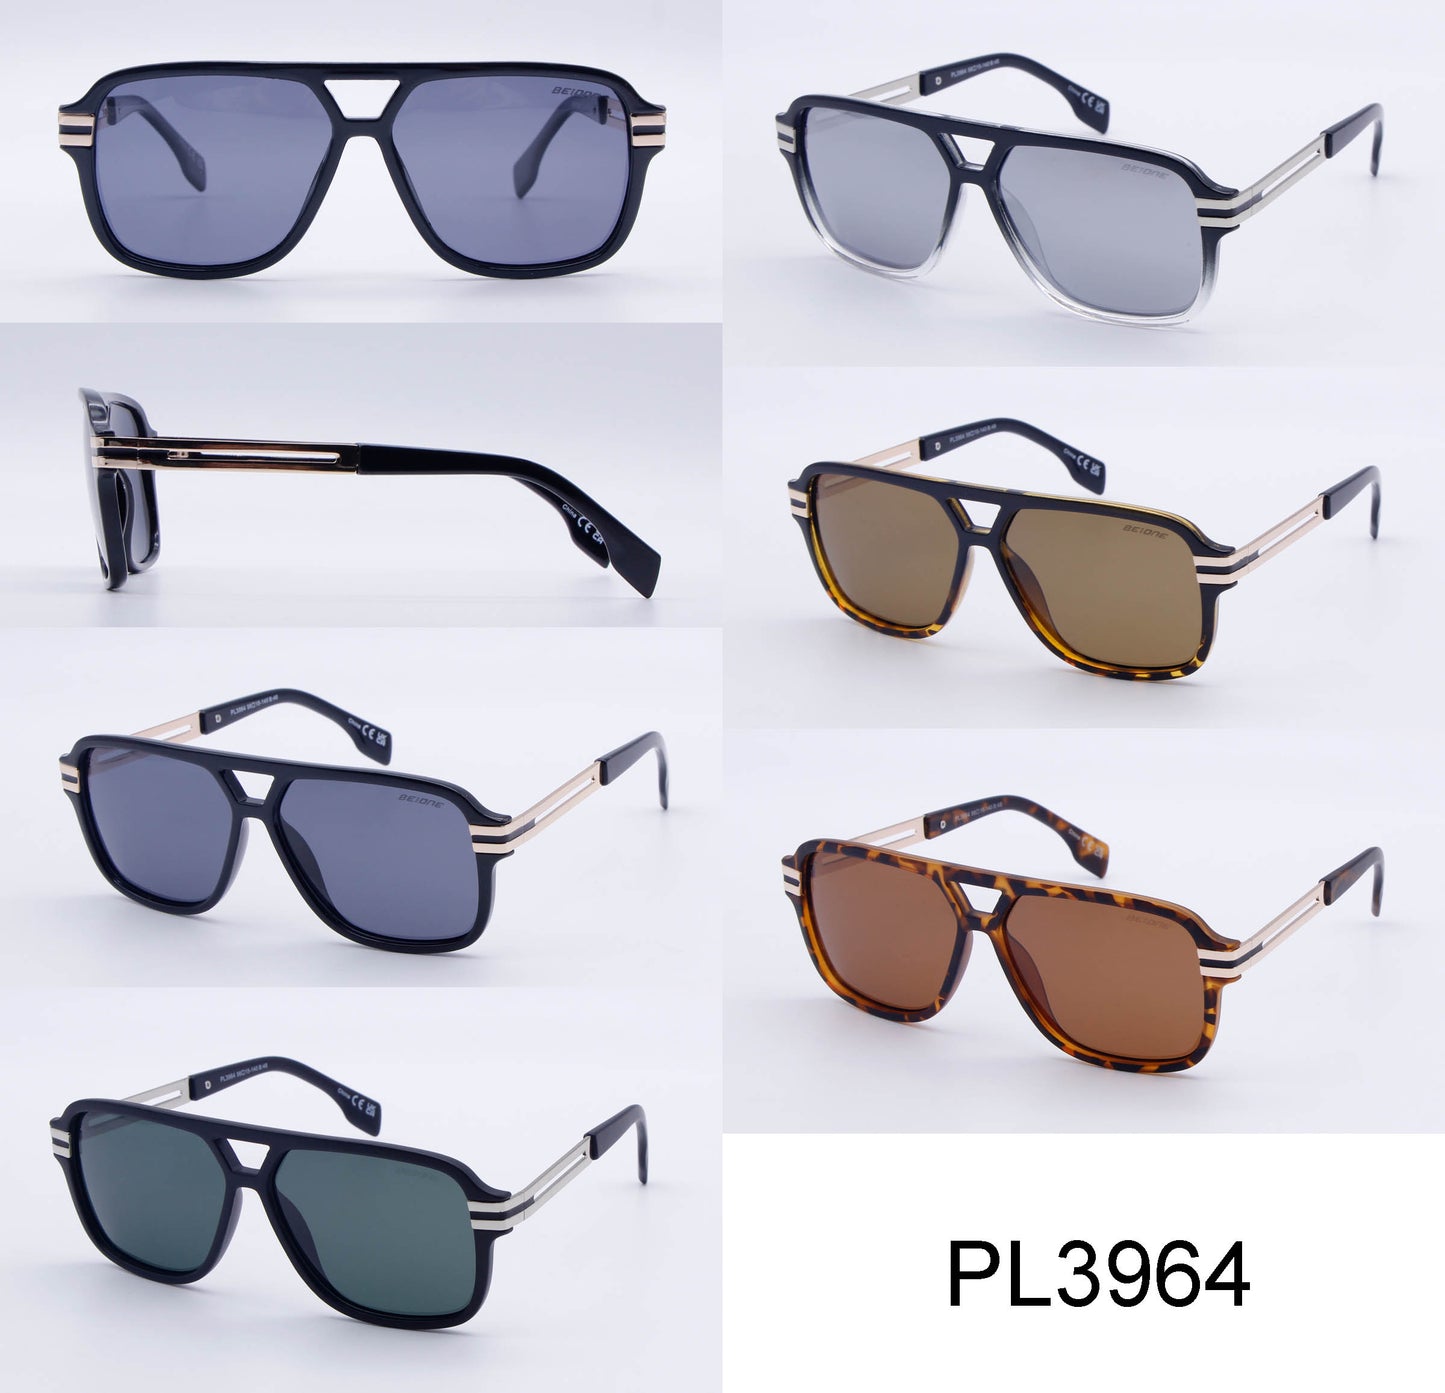 PL 3964 - Polarized Plastic Rectangular Sunglasses